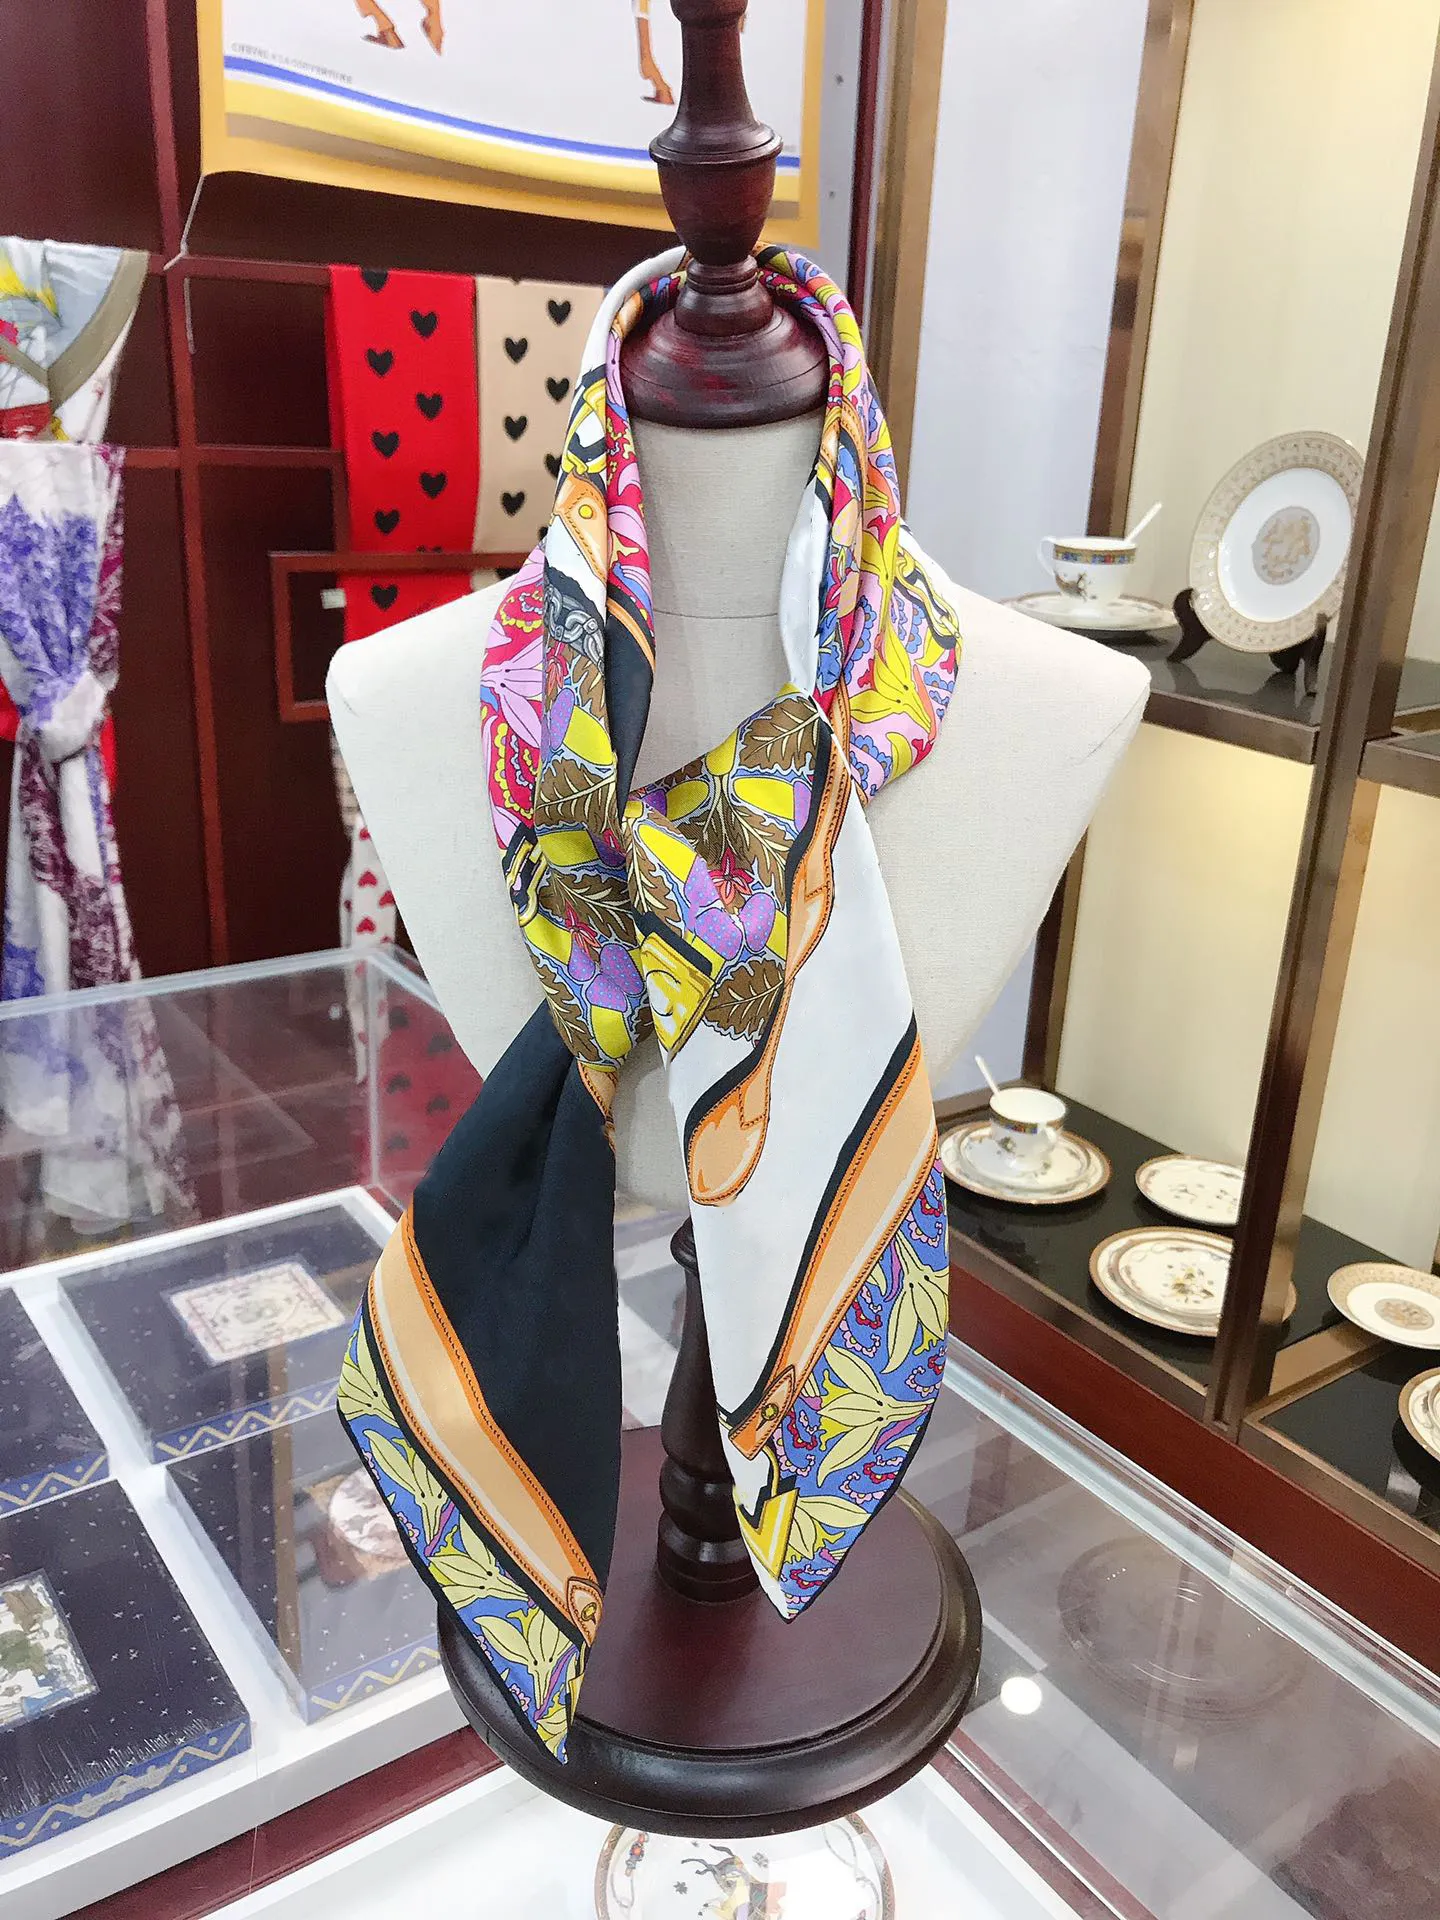 Высококачественные женские шарфы дизайнерские шарф шарф мода теплое зимнее высококачественное печатное шелковое шарфы.